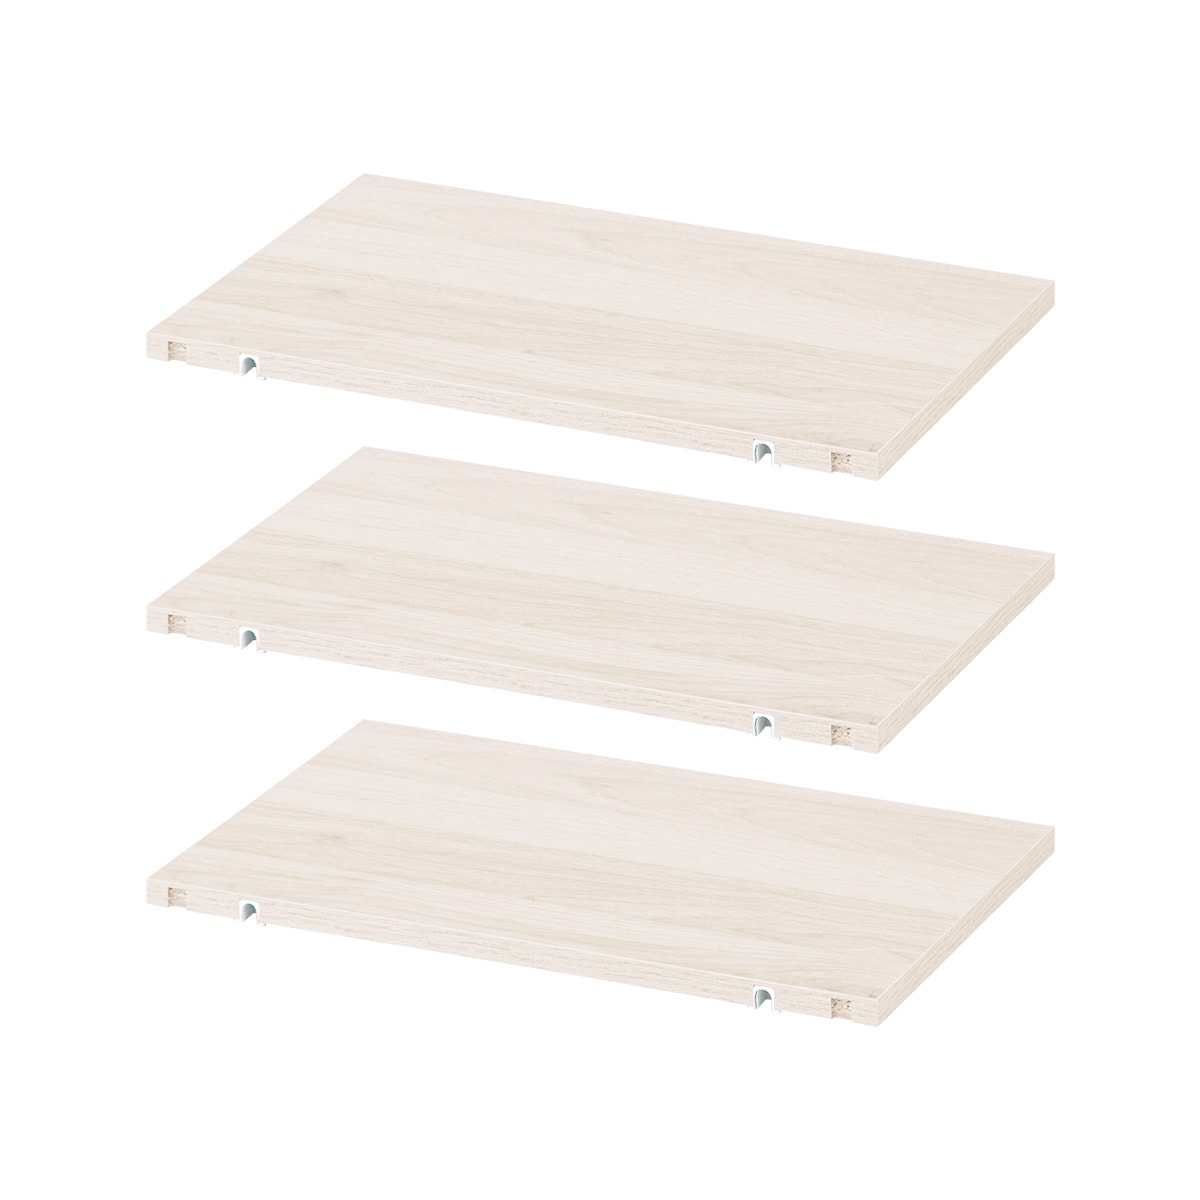 ニトリのシェルフMSシリーズ用 棚板(3枚セット ホワイトウォッシュ)   【1年保証】(リビング収納)